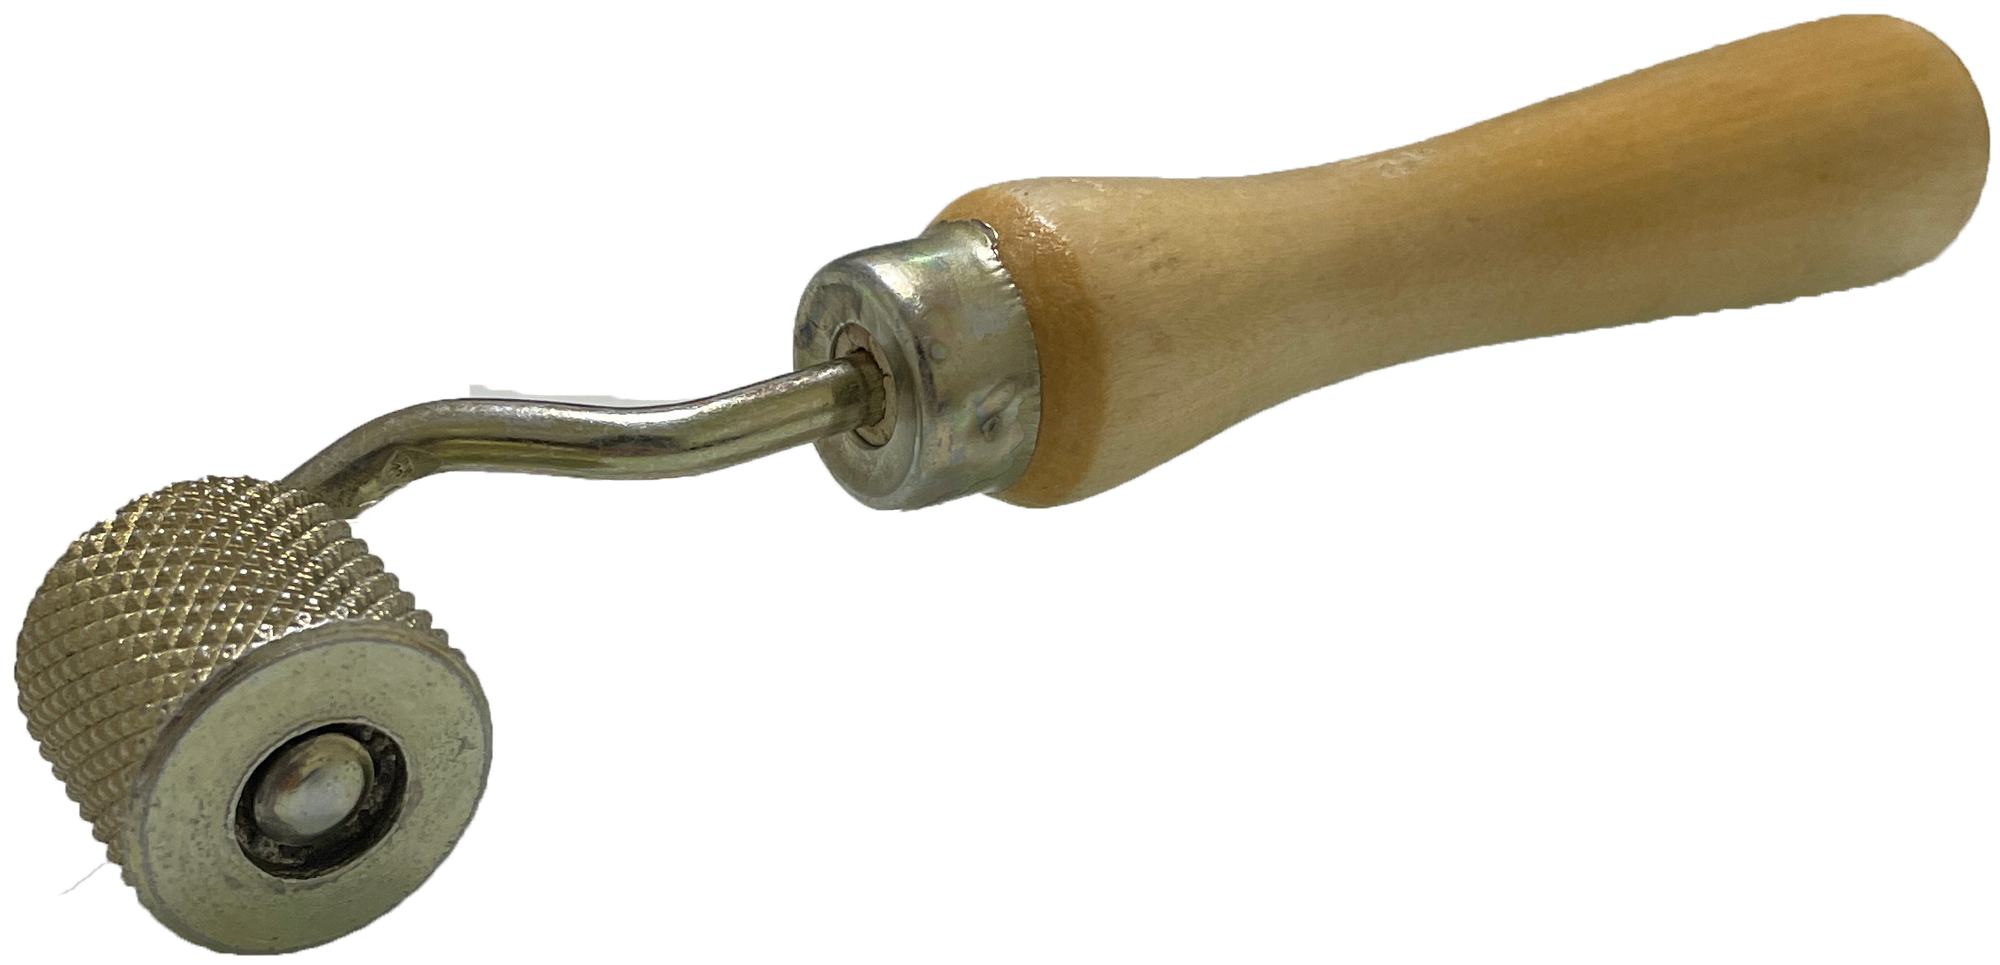 Валик прикаточный для шумоизоляции металлический с деревянной ручкой I Ширина 25 Диаметр 30 I Ролик прикаточный для шумо- виброизоляции